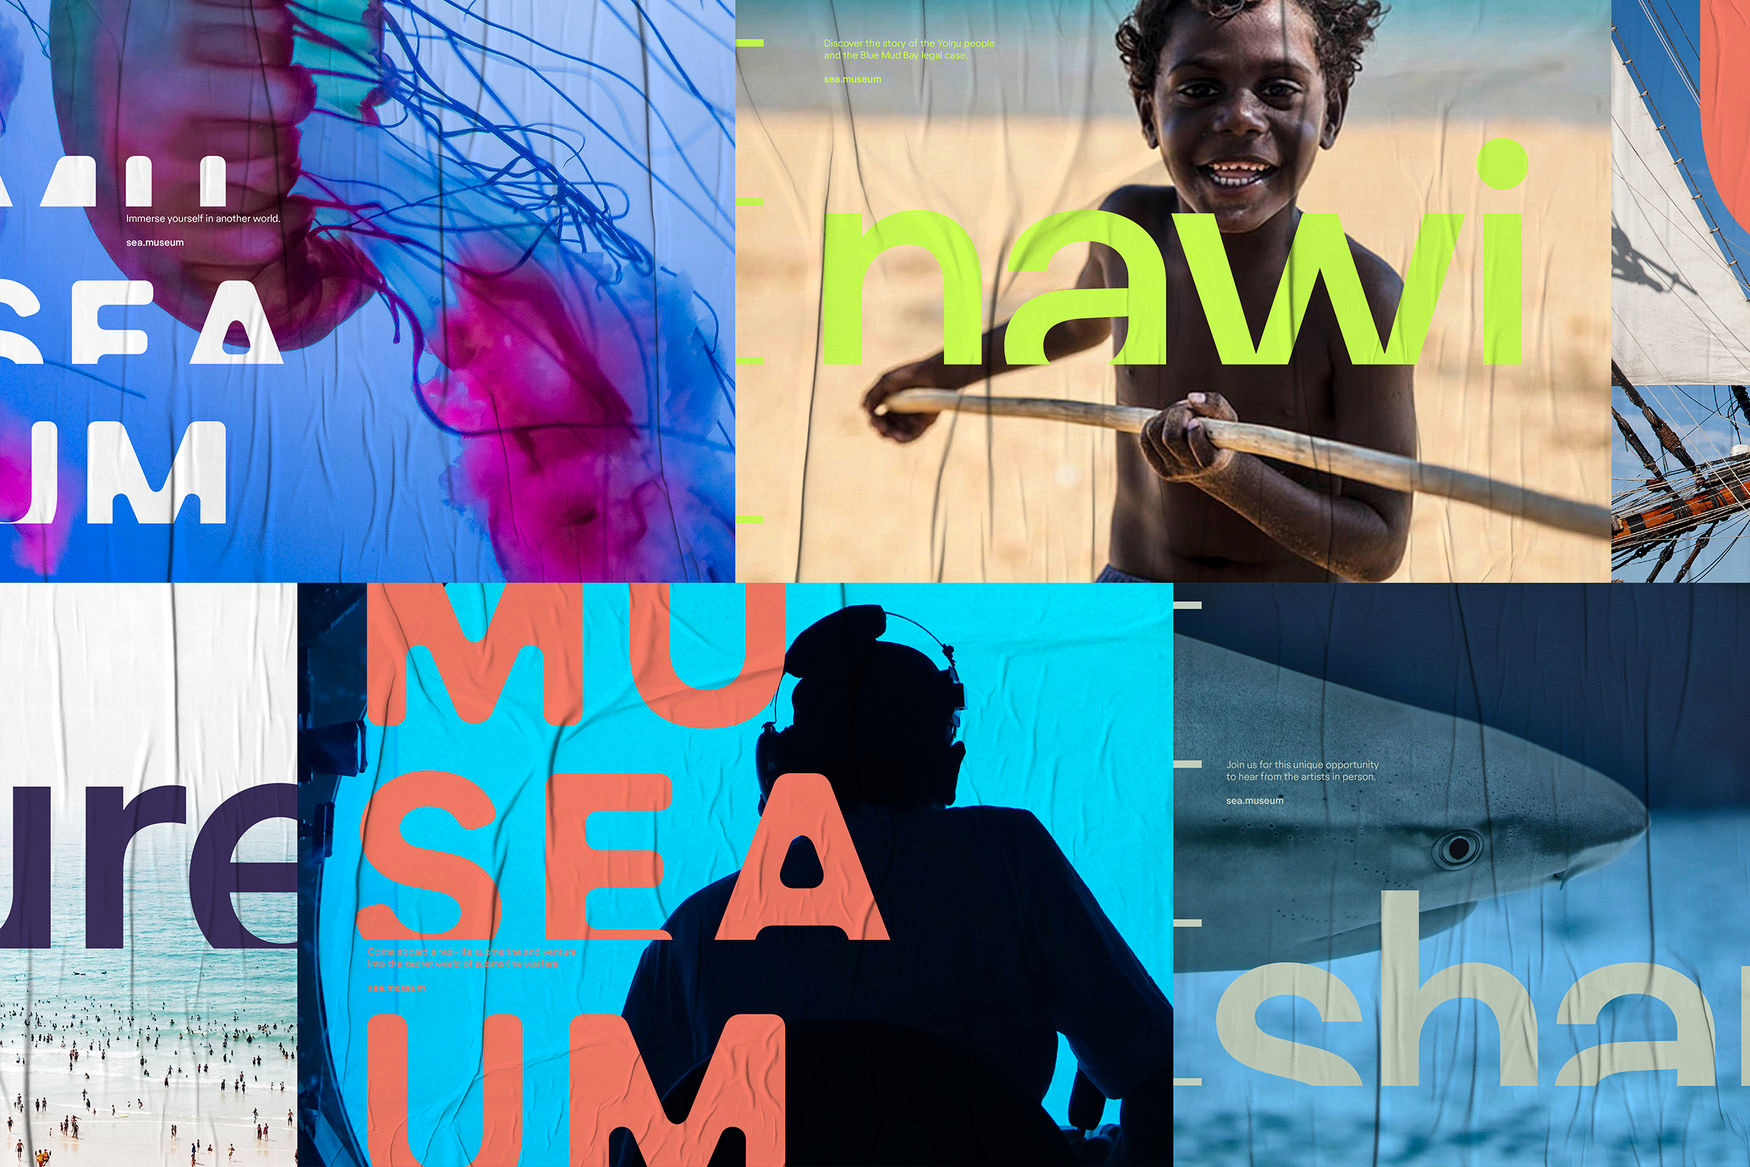 澳大利亚国家海事博物馆“Museaum”品牌形象升级